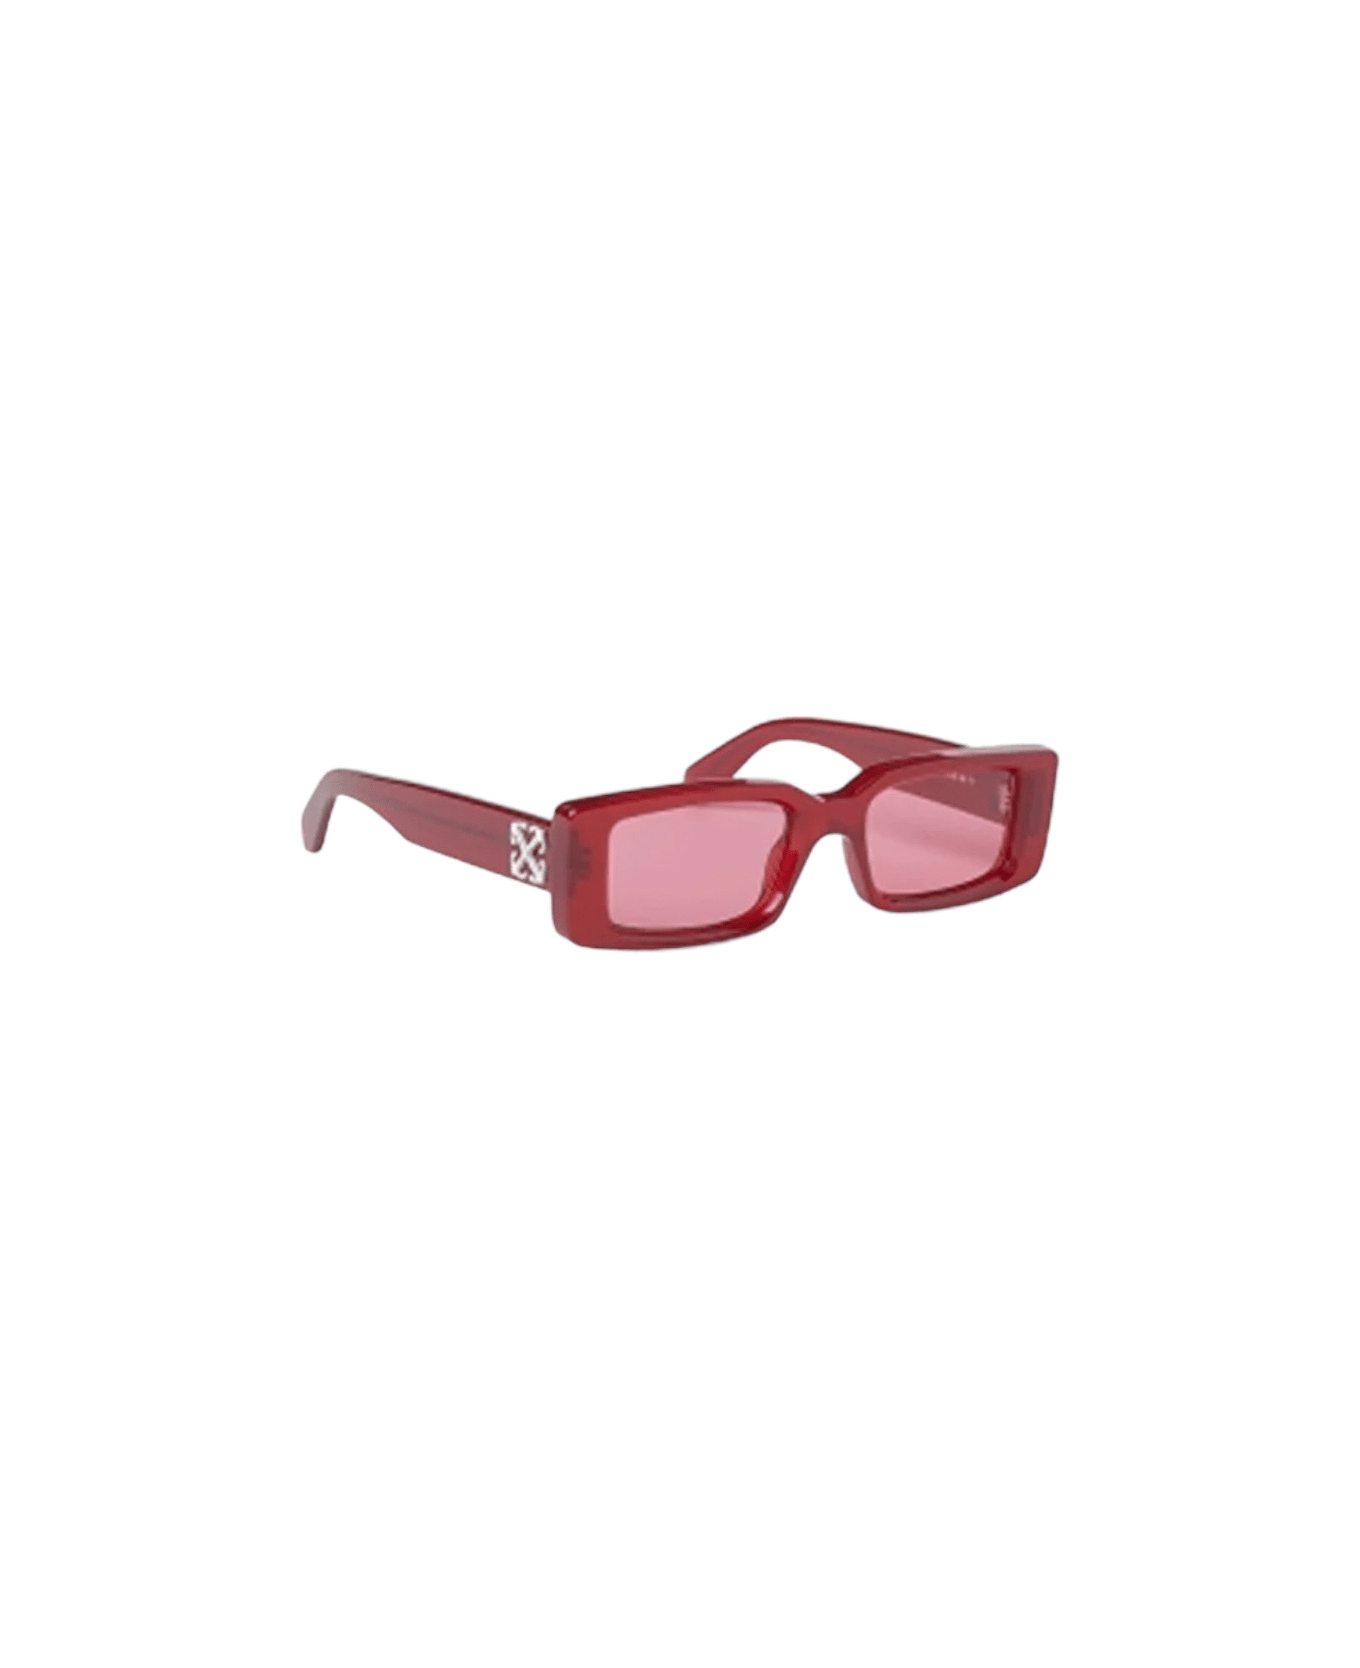 Off-White Arthur - Oeri127 Sunglasses サングラス